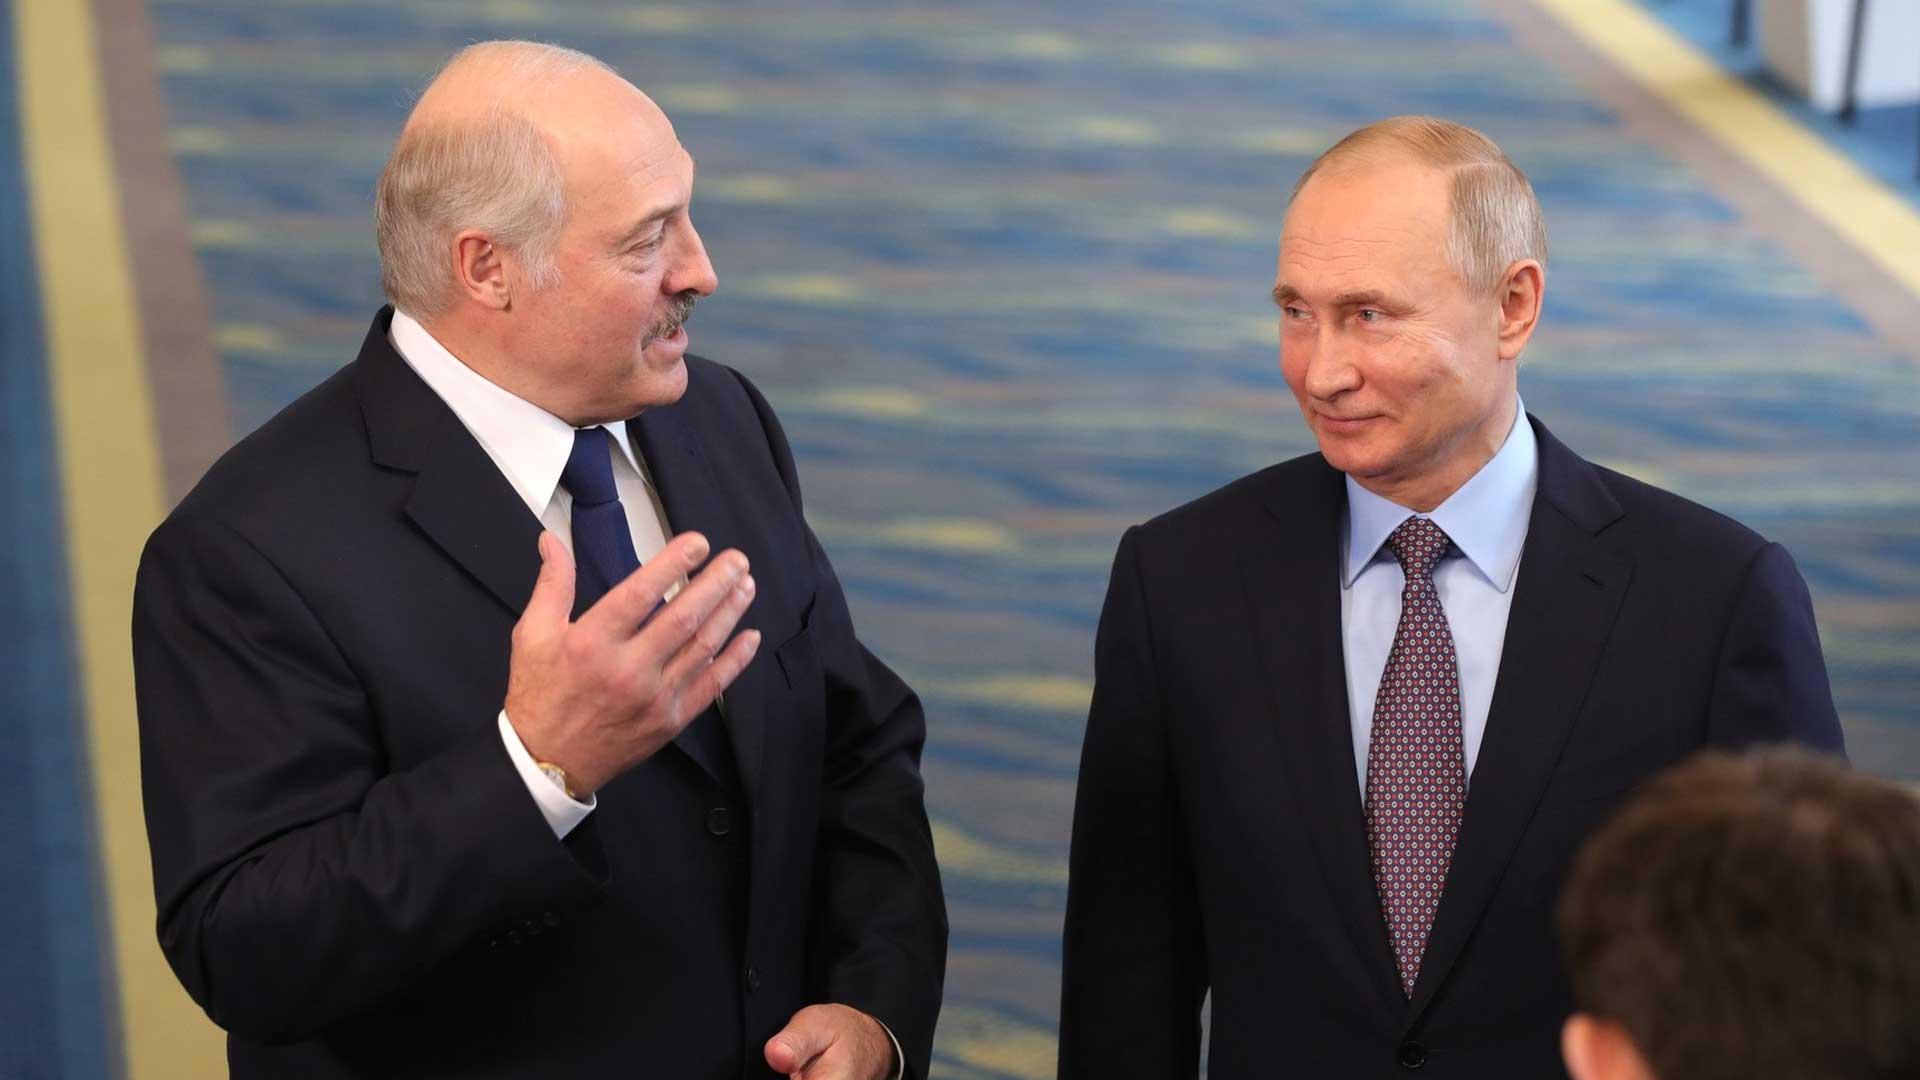 Единая валюта не должна принадлежать ни России, ни Белоруссии, подчеркнул президент Фото: © GLOBAL LOOK press / Kremlin Pool